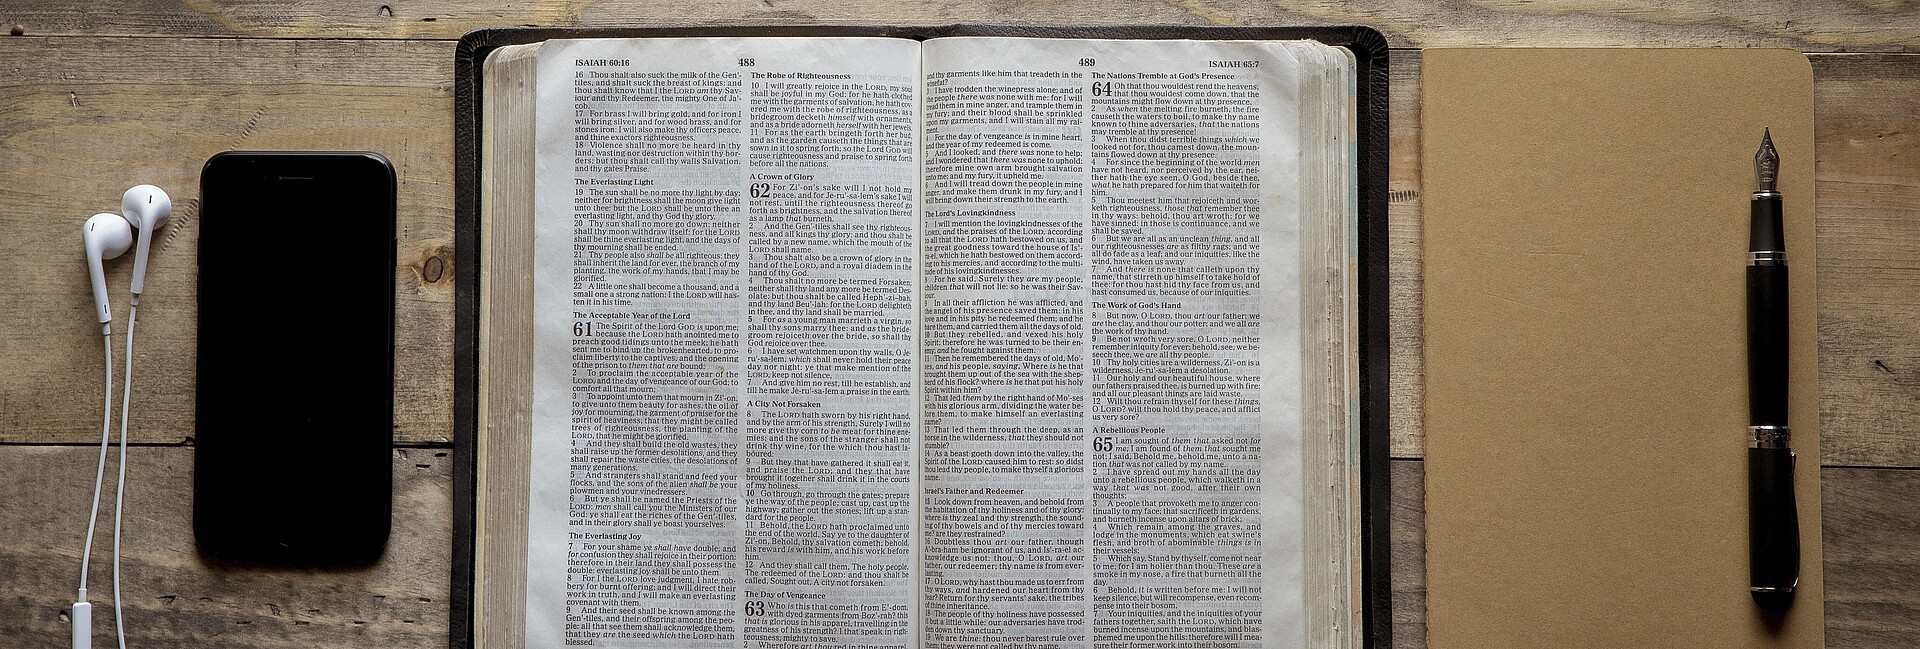 Geöffnete Bibel; rechts daneben ein Notizbuch, auf dem ein Füller liegt. Links von der Bibel liegt ein ein Smartphone mit einem Kopfhörer.